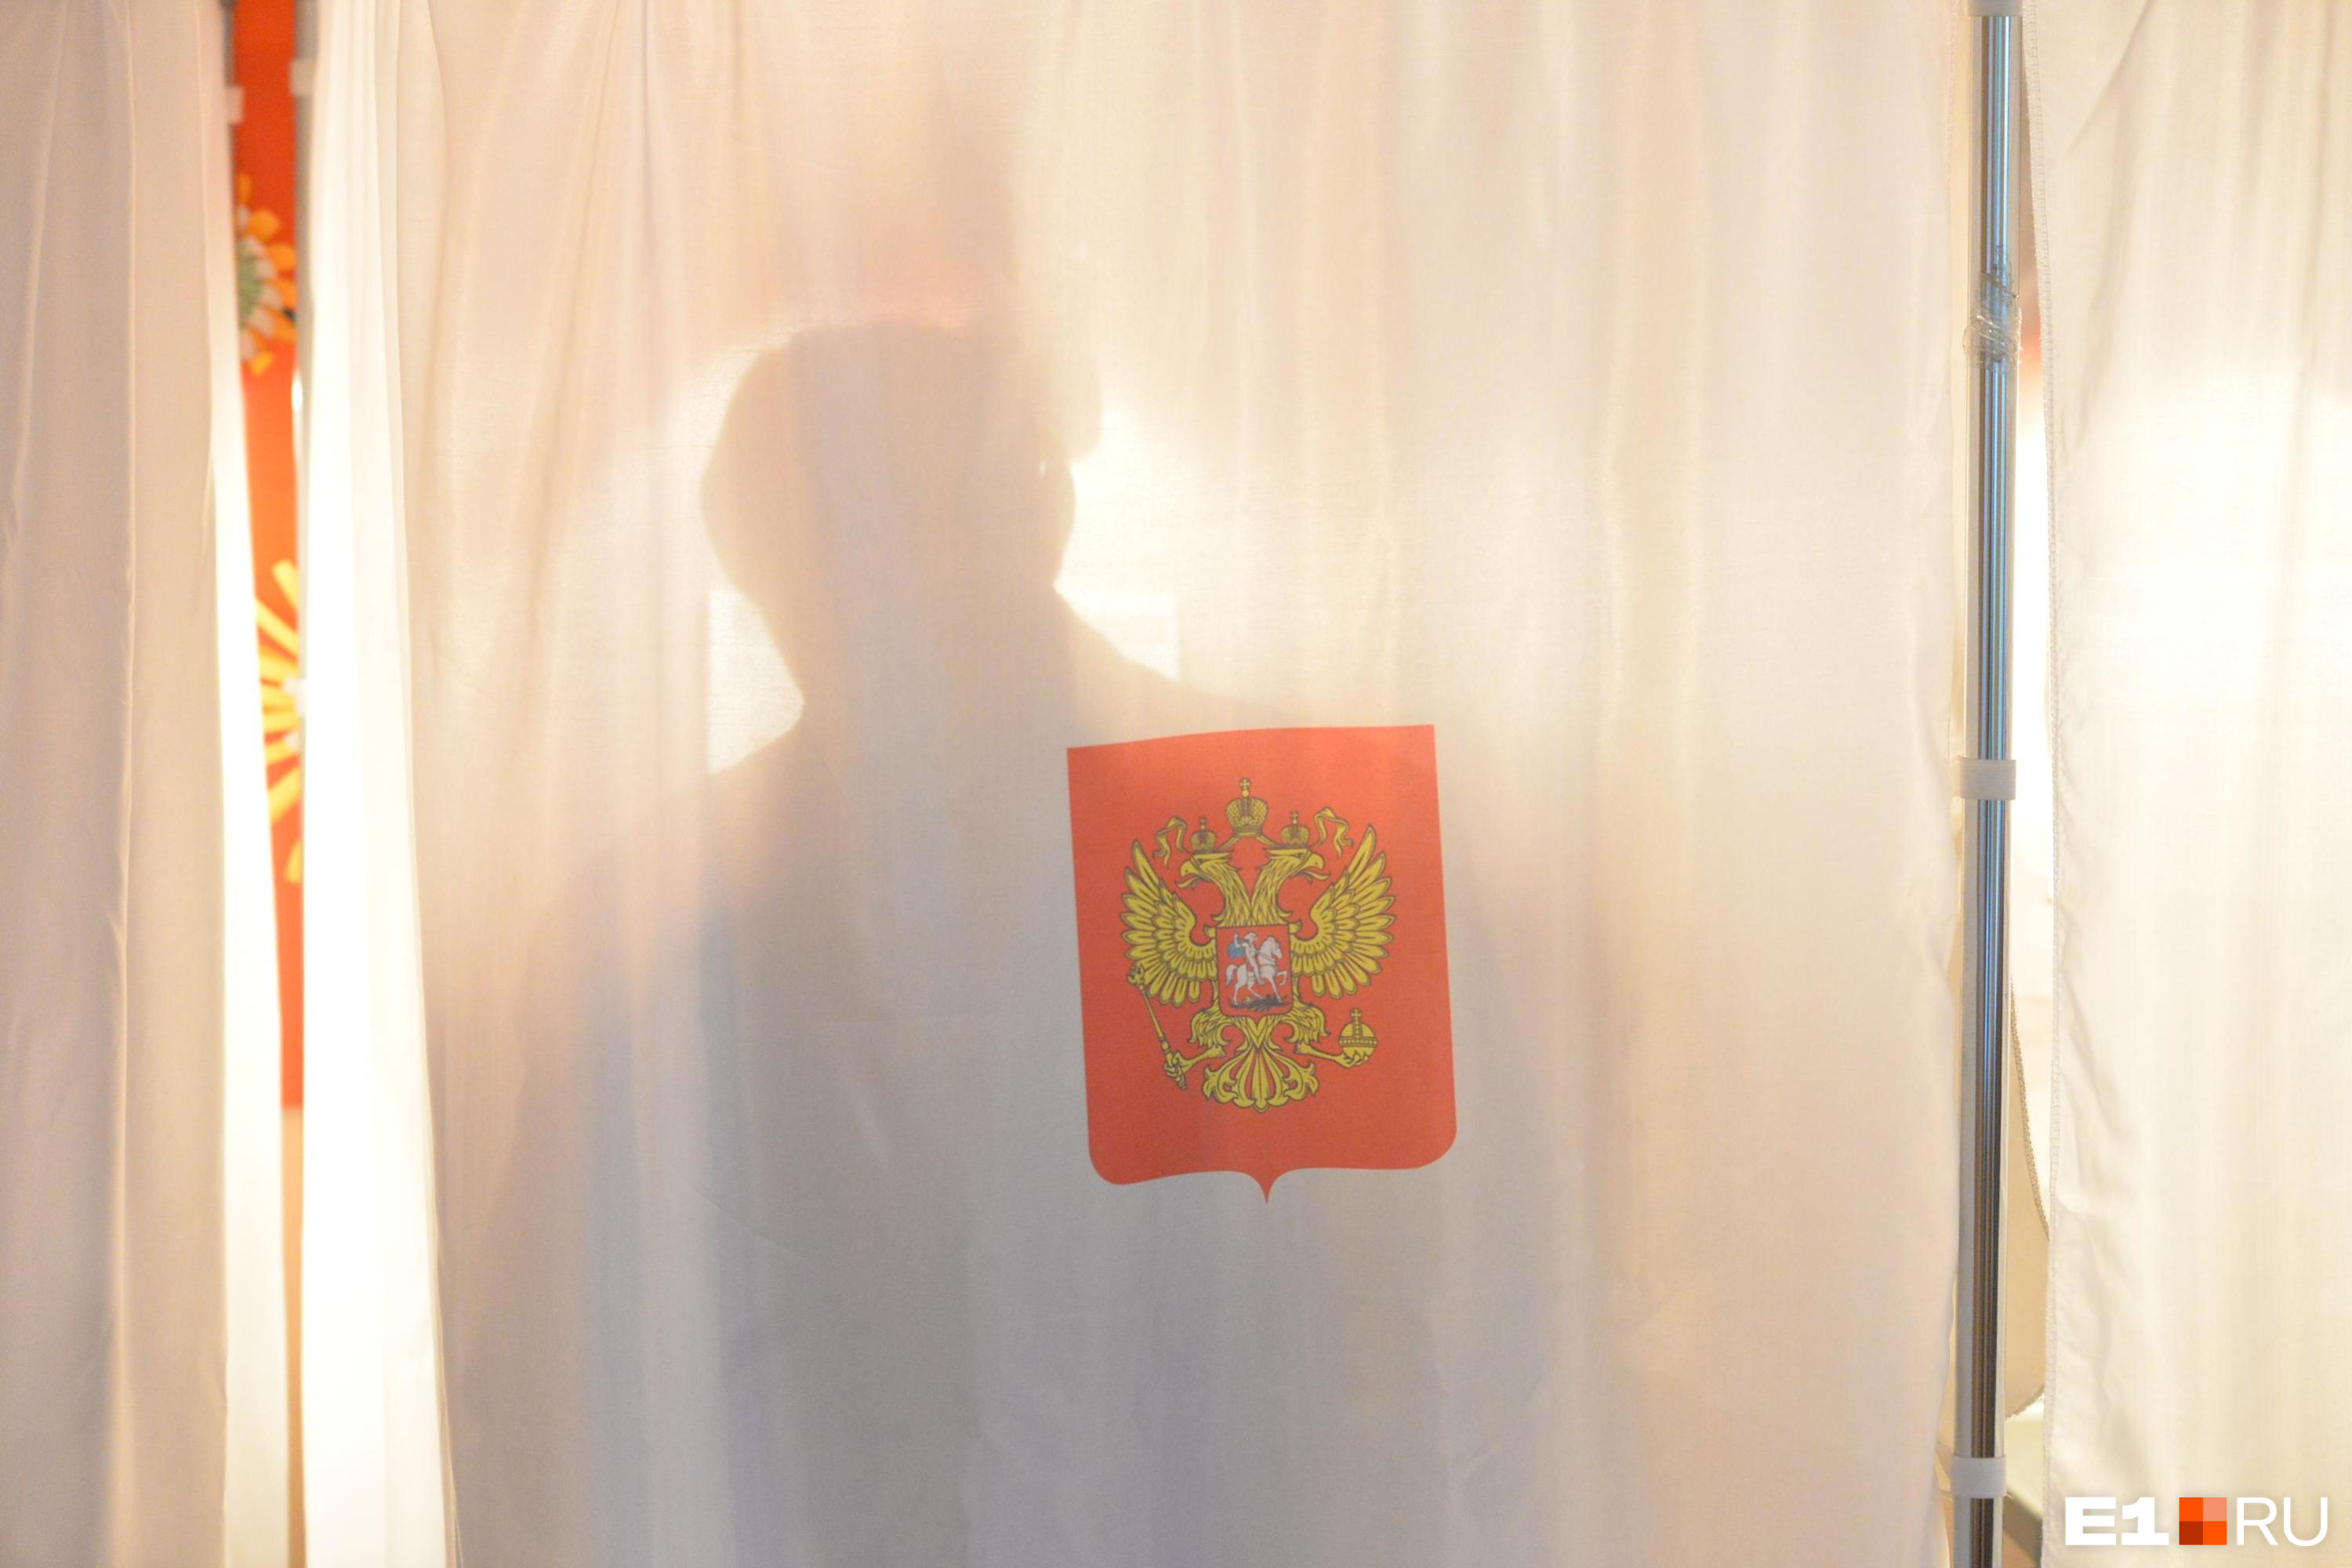 Центральная комиссия по выборам и проведению референдумов Кыргызской Республики